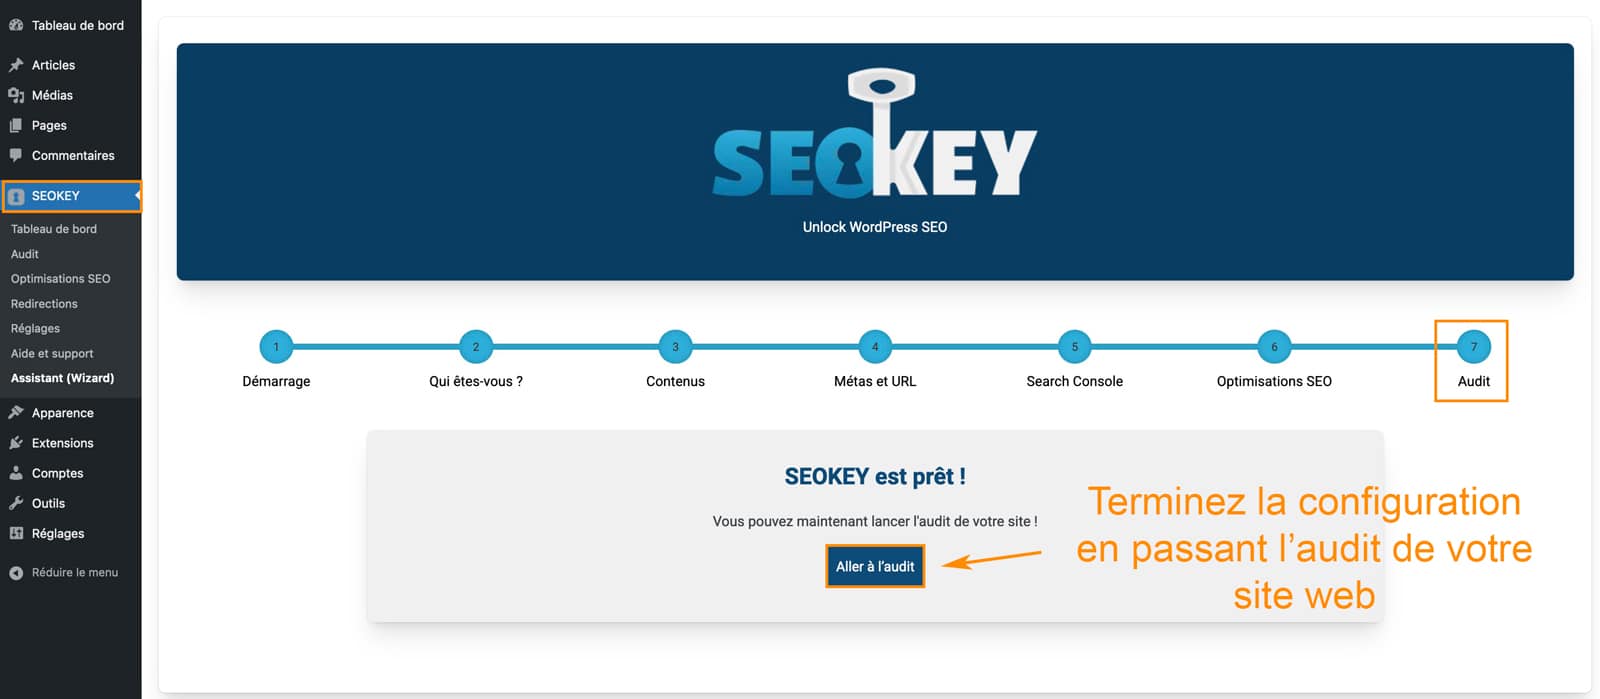 Tutoriel pour utiliser le plugin SEOKEY pour le référencement WordPress